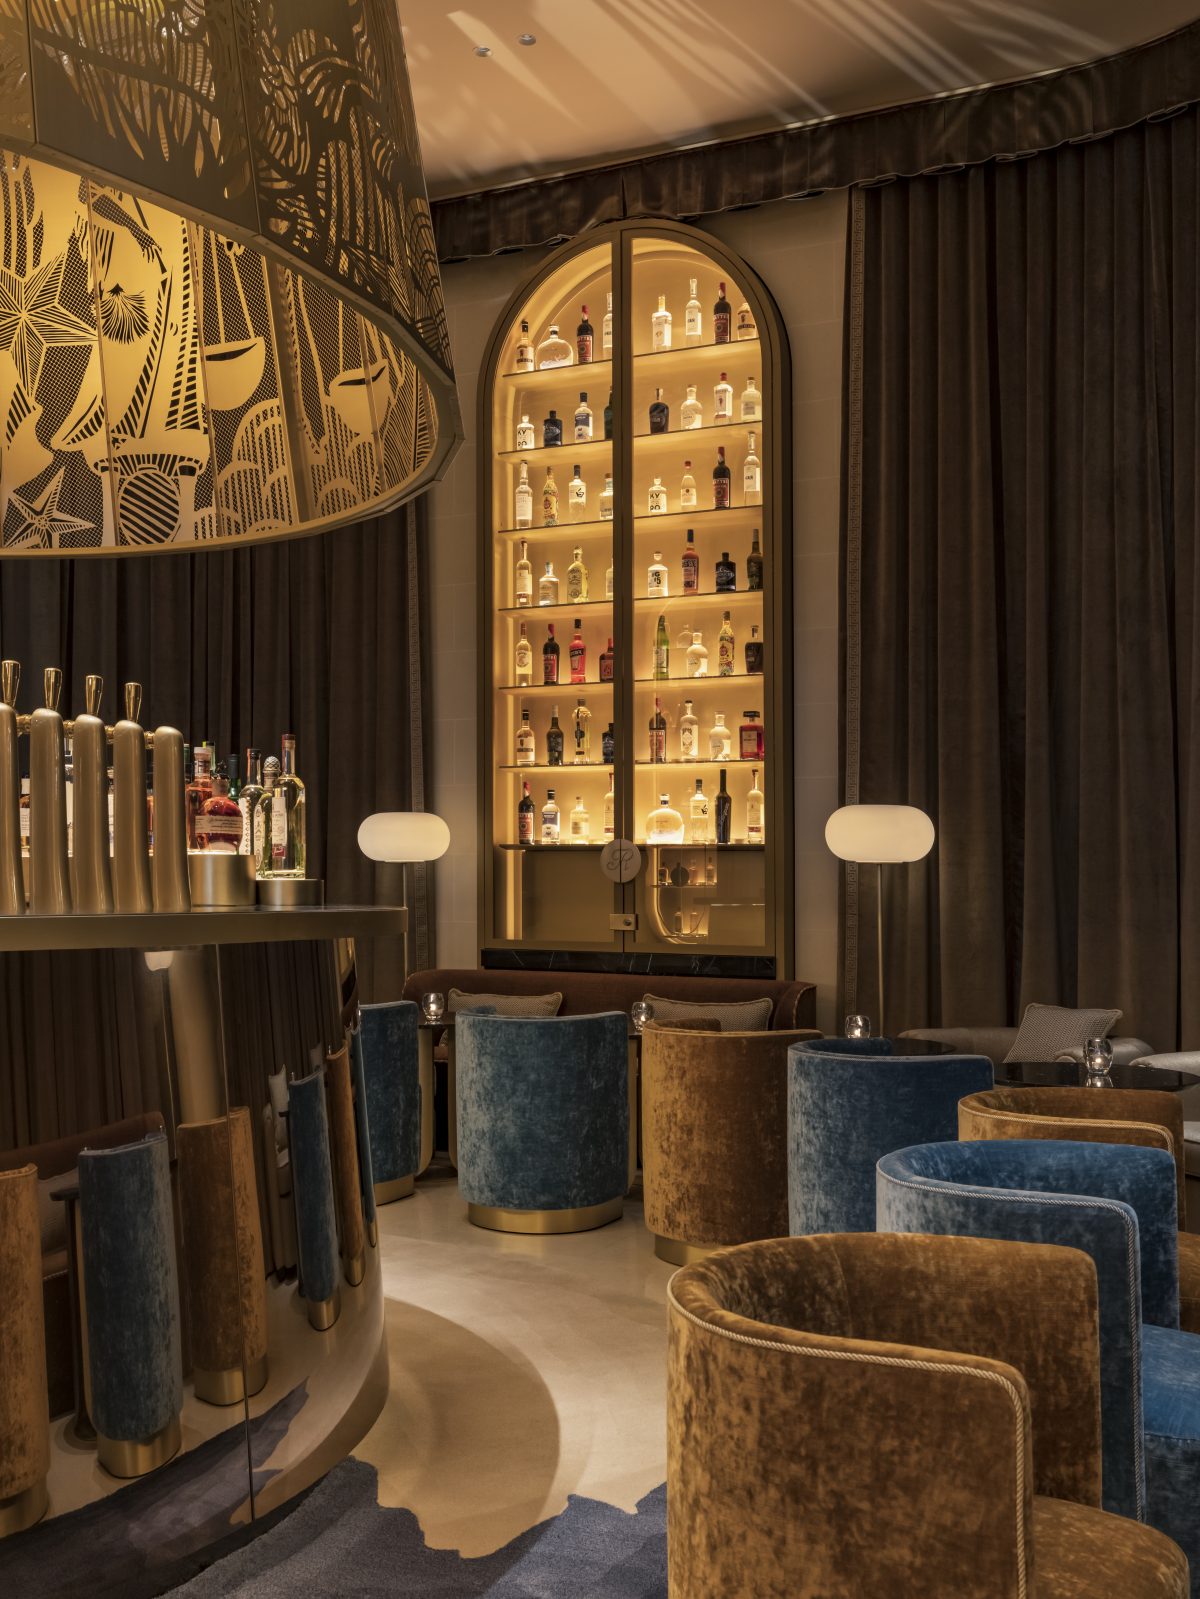 Le Ritz Bar réinvente l’art des cocktails avec sa nouvelle carte inspirée de la Biodynamie